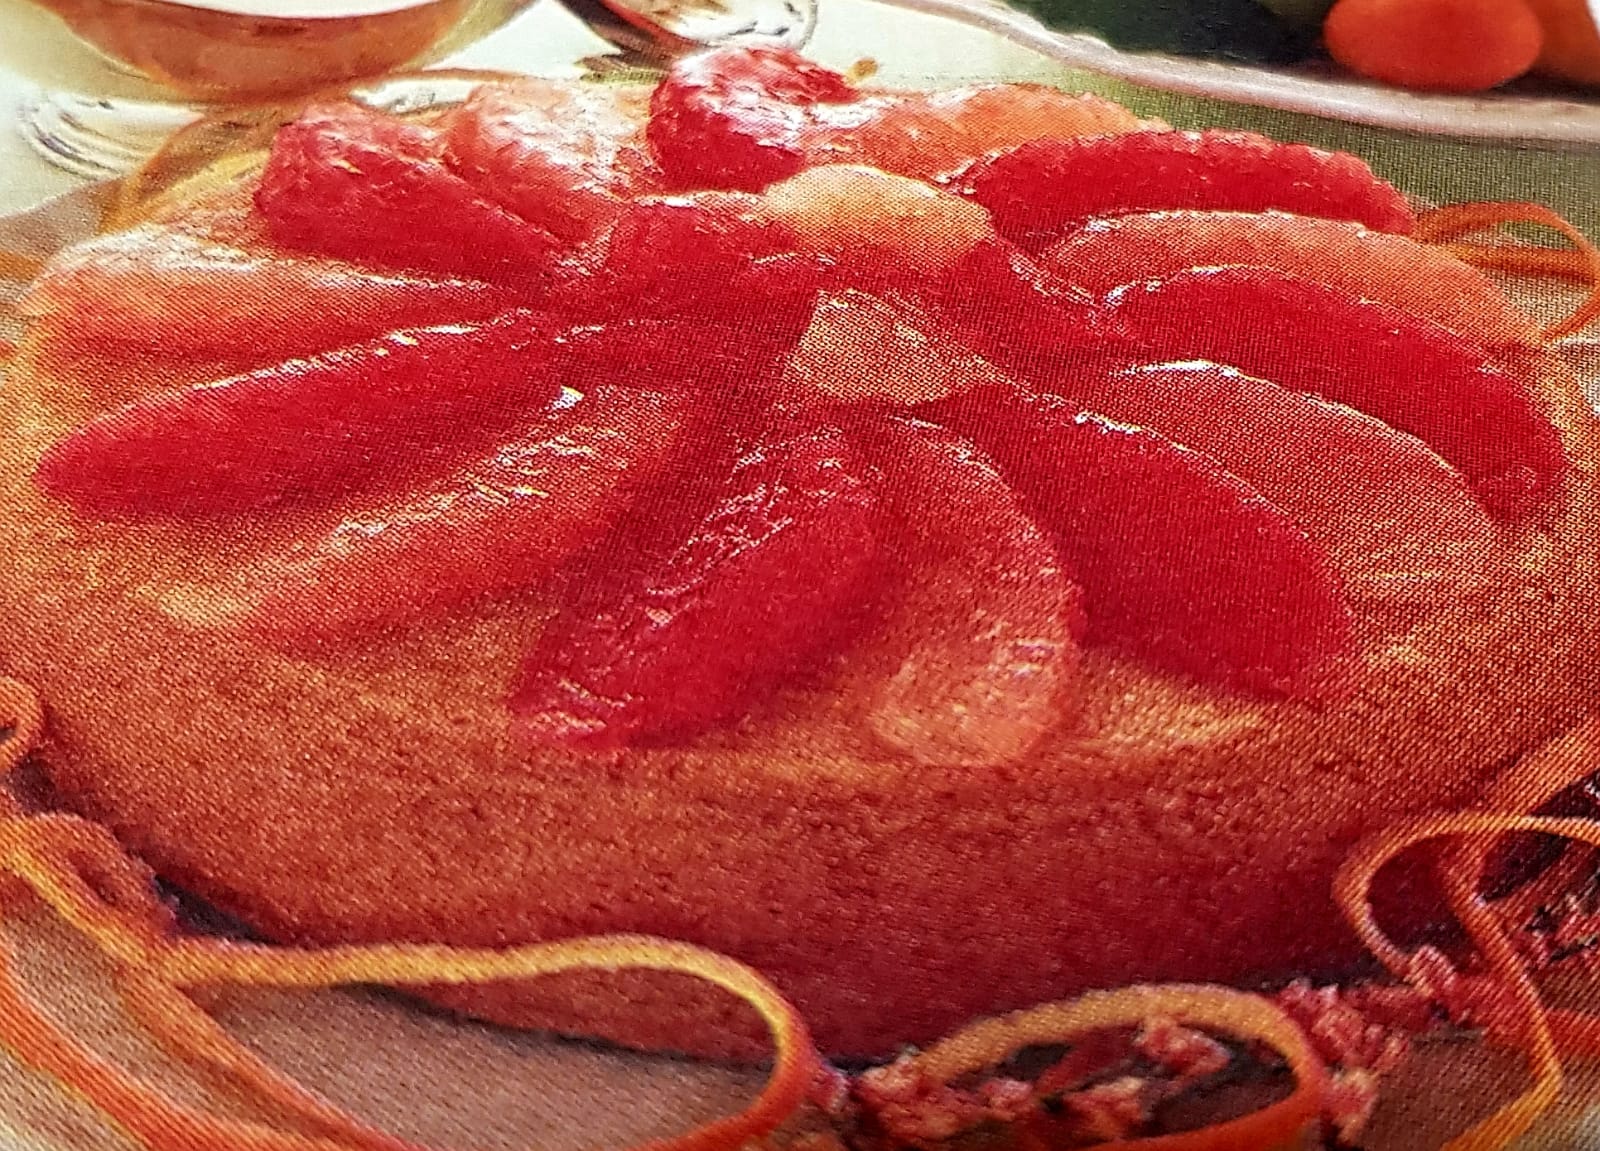 Una torta per questo periodo, il pompelmo un magnifico frutto tipicamente invernale